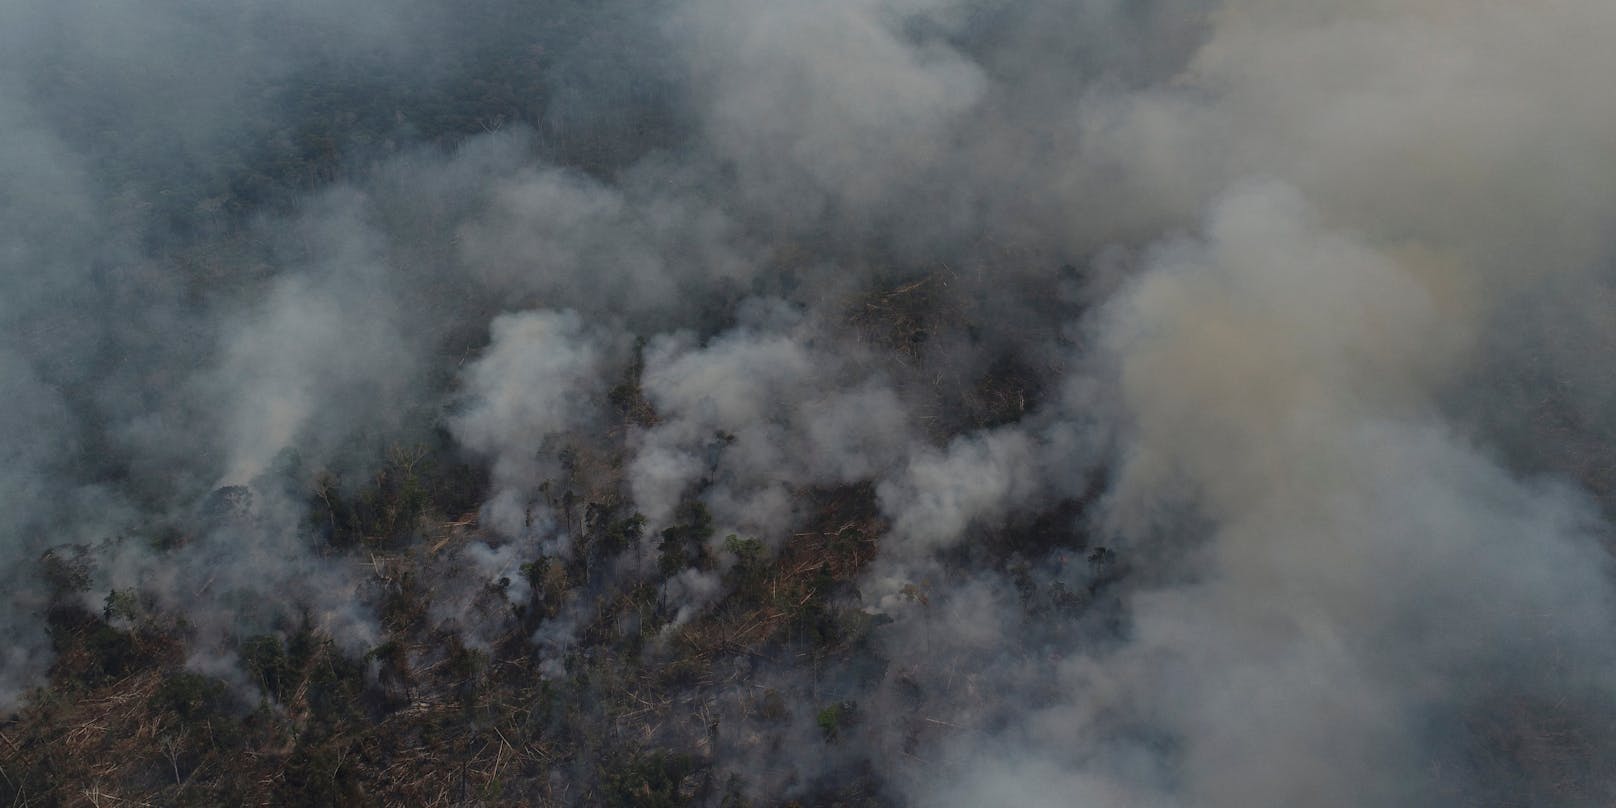 Der regenwald brennt, wie schon lange nicht mehr, wie etwa hier in Brasilien.